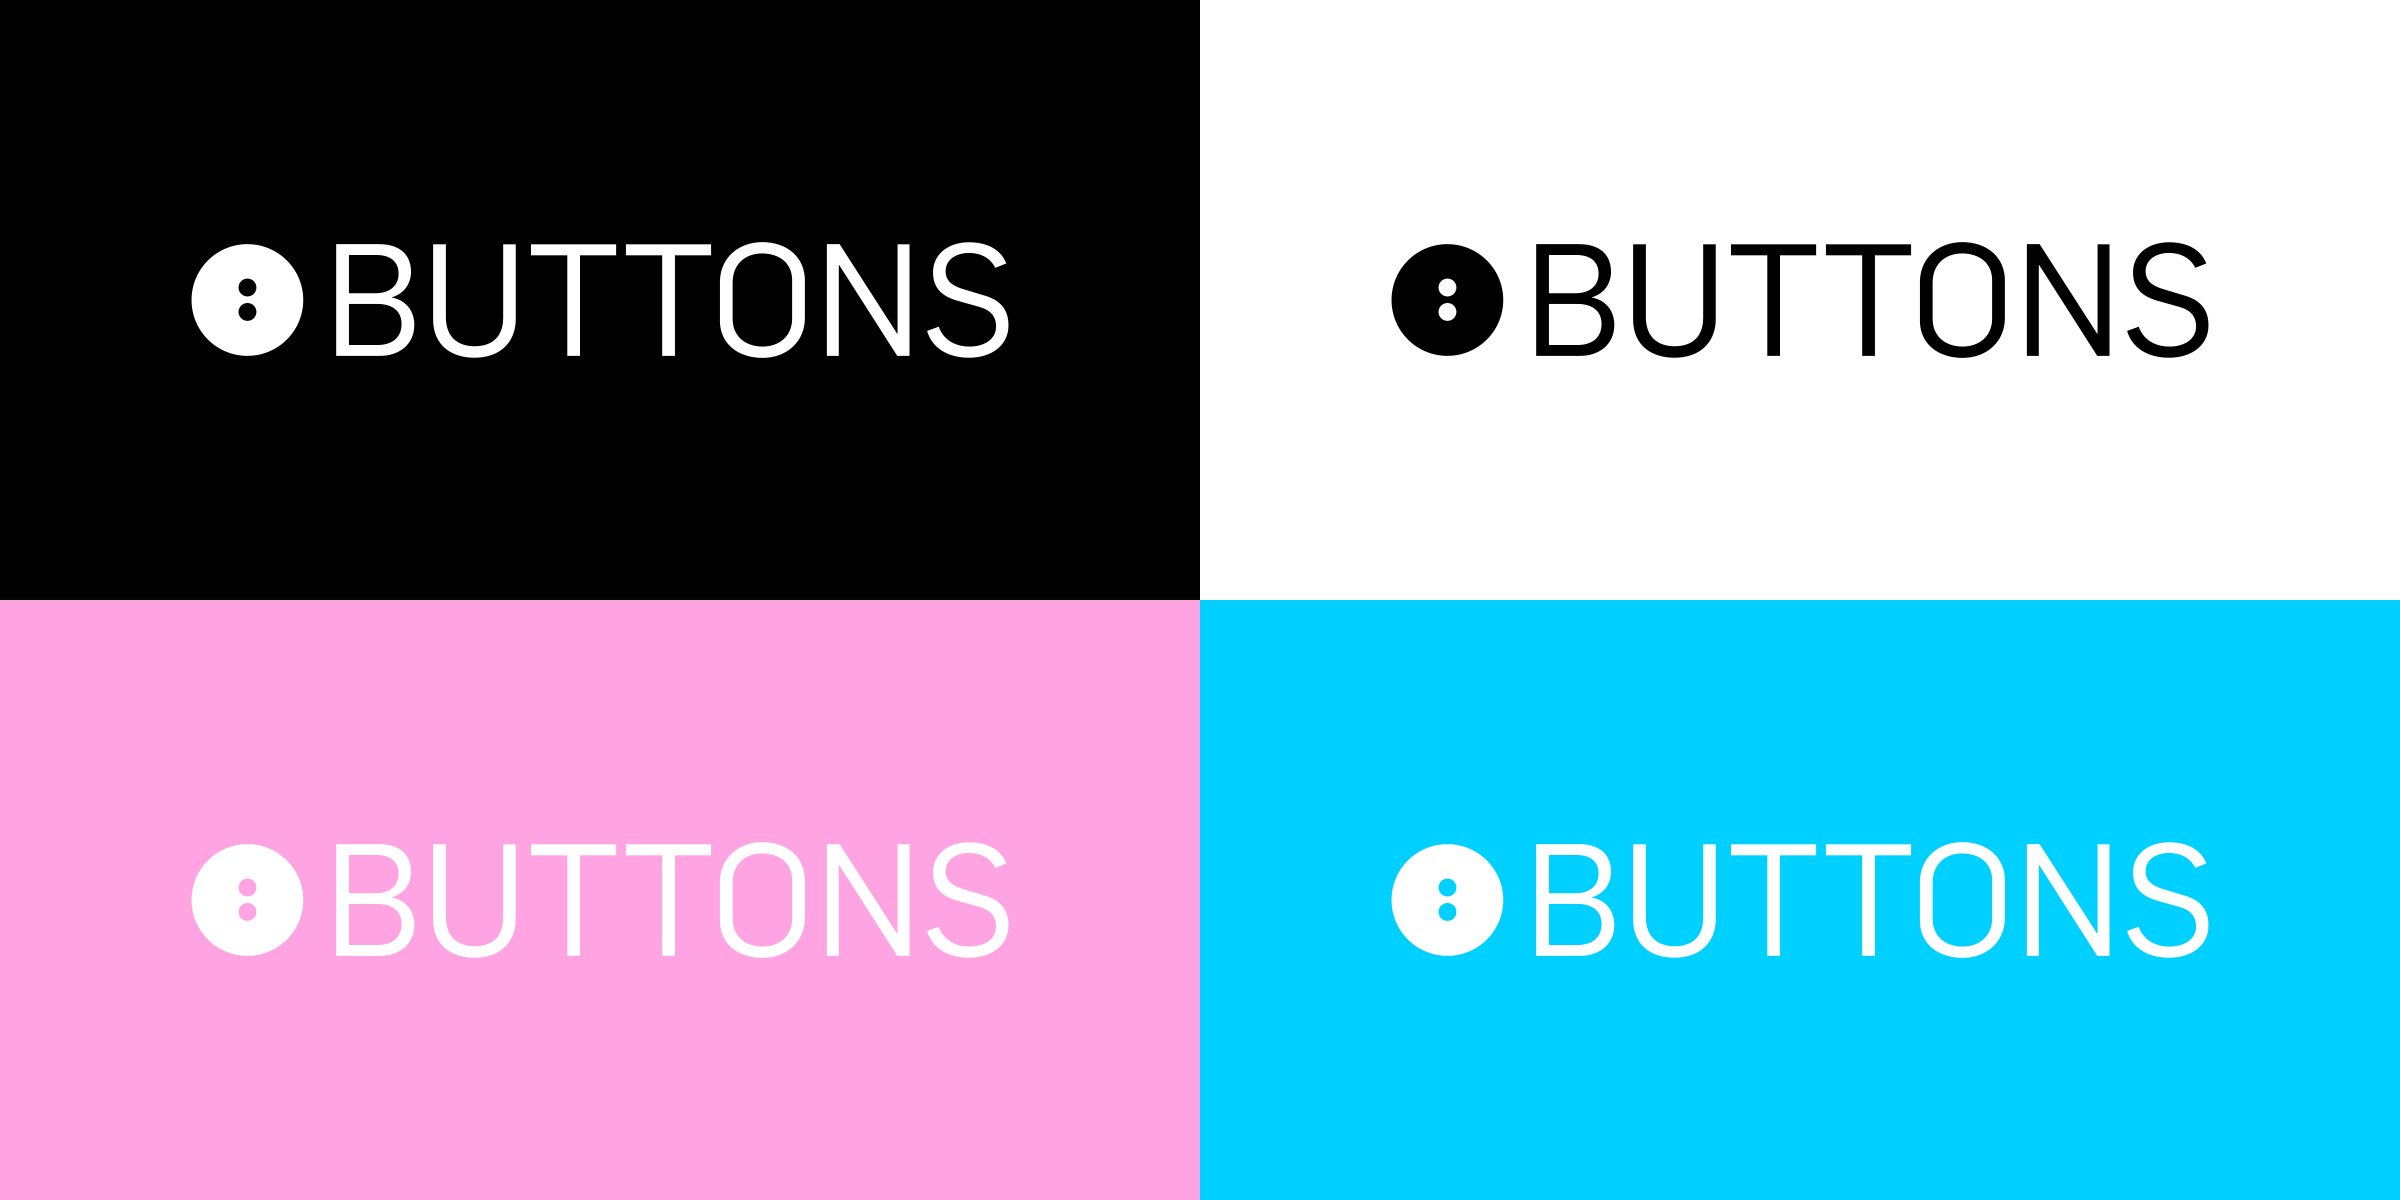 Buttons-Logos-0-01.jpg